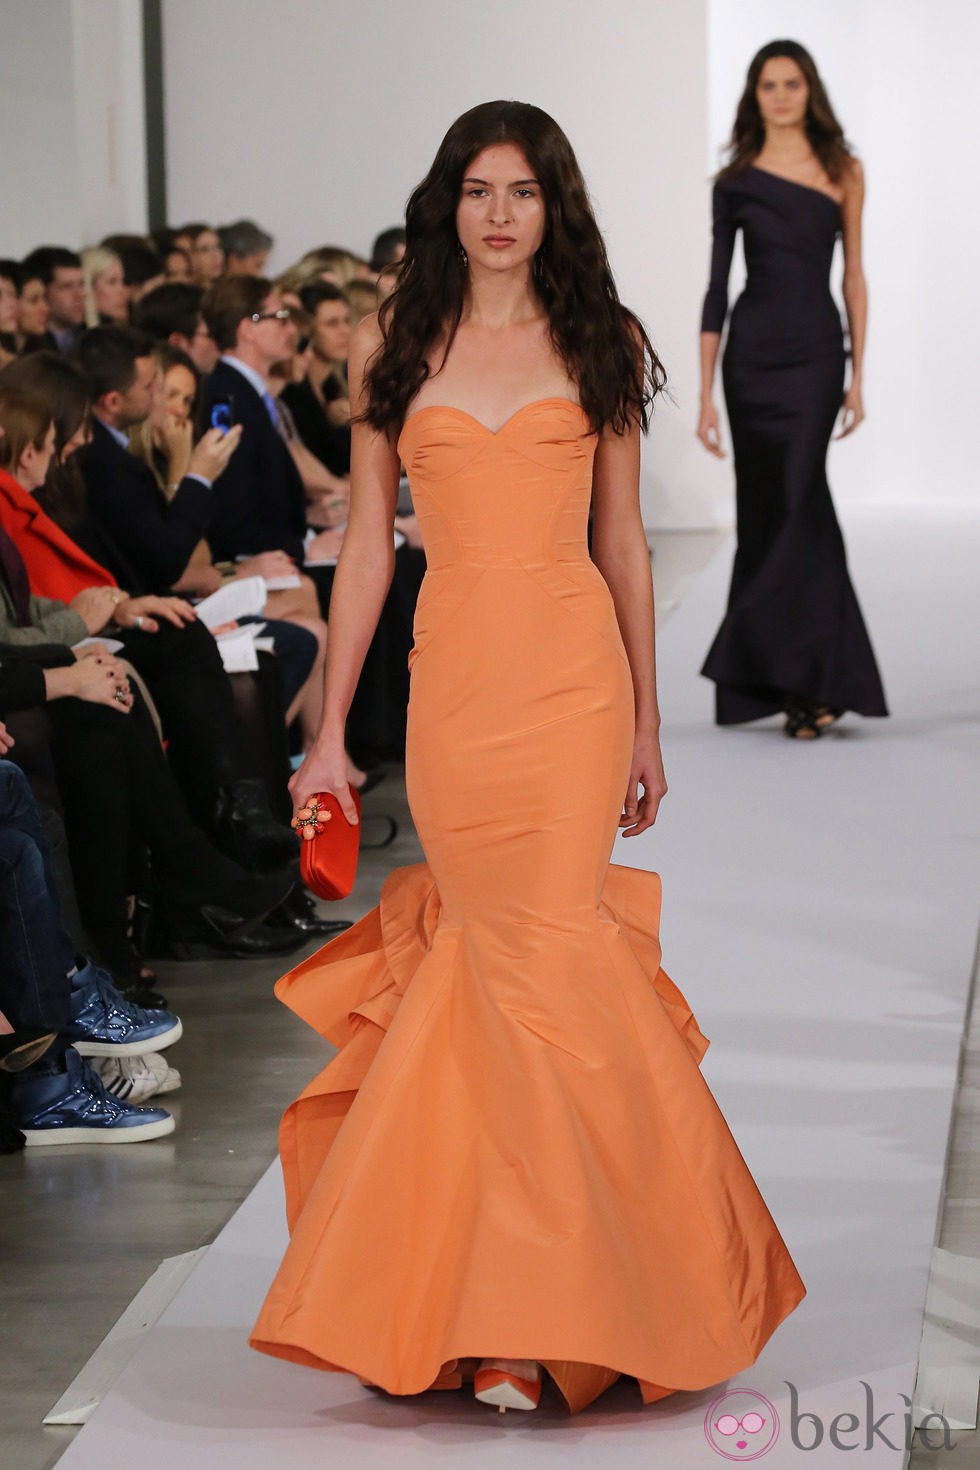 Vestido naranja de la colección pre-fall 2013 de Oscar de la Renta